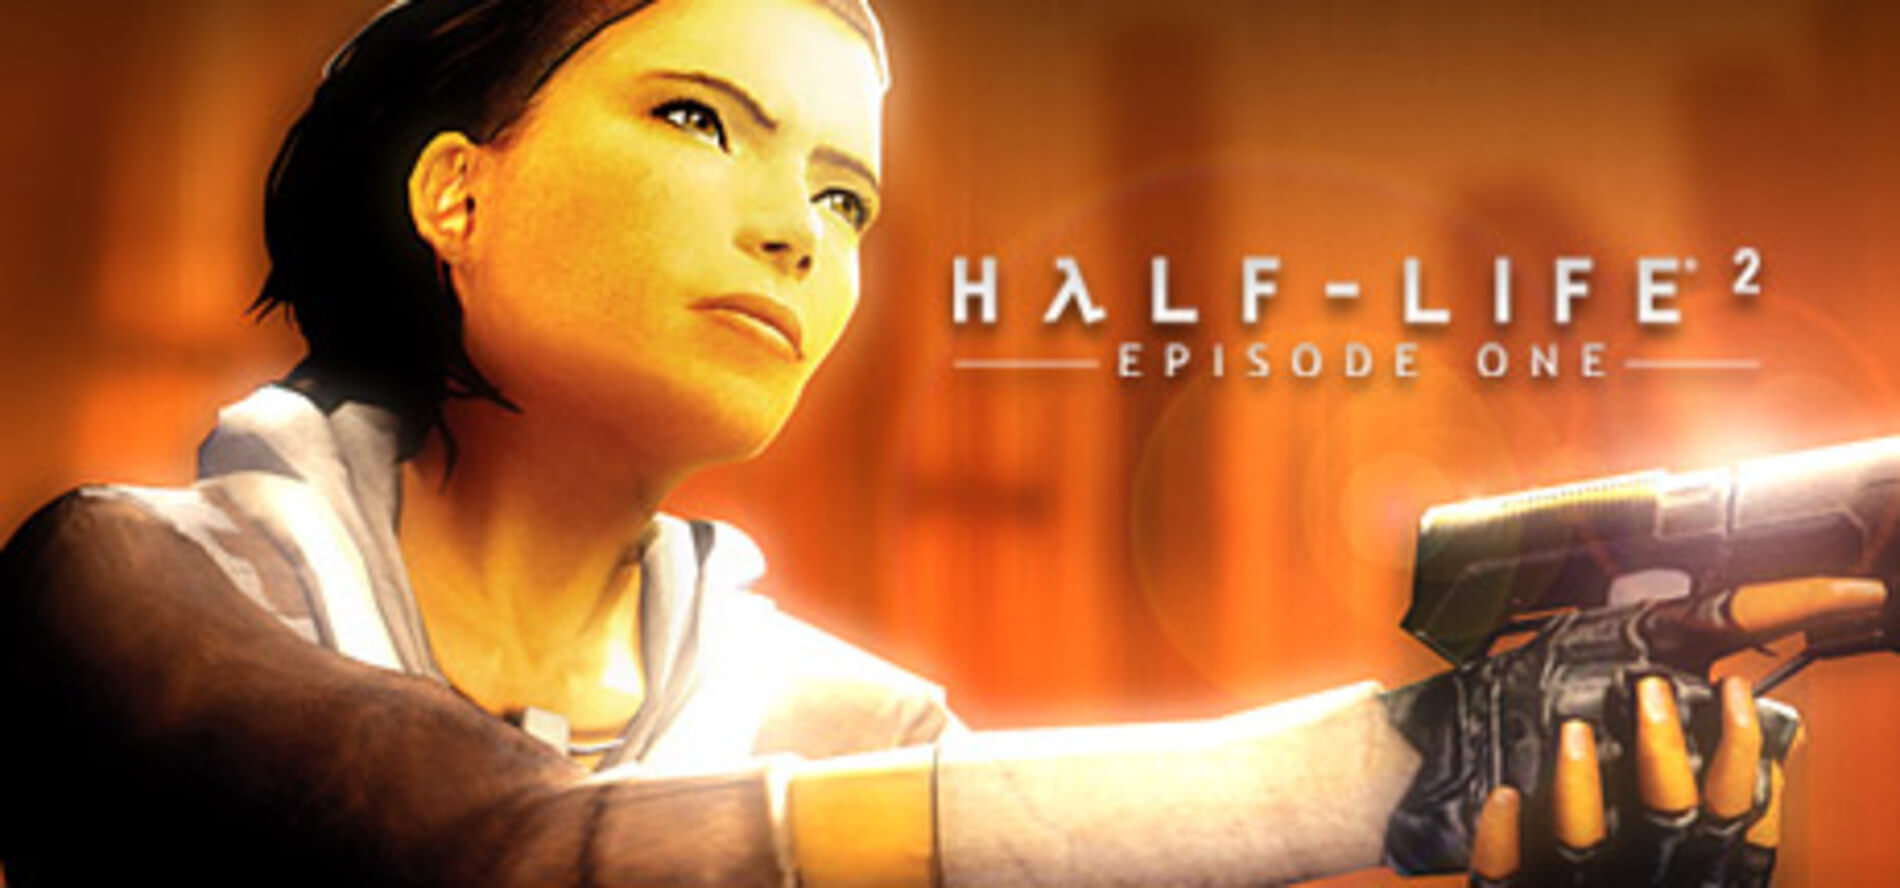 Фанатські моди RTX для Half-Life 2 демонструються на YouTube, проте якість залишає бажати кращого